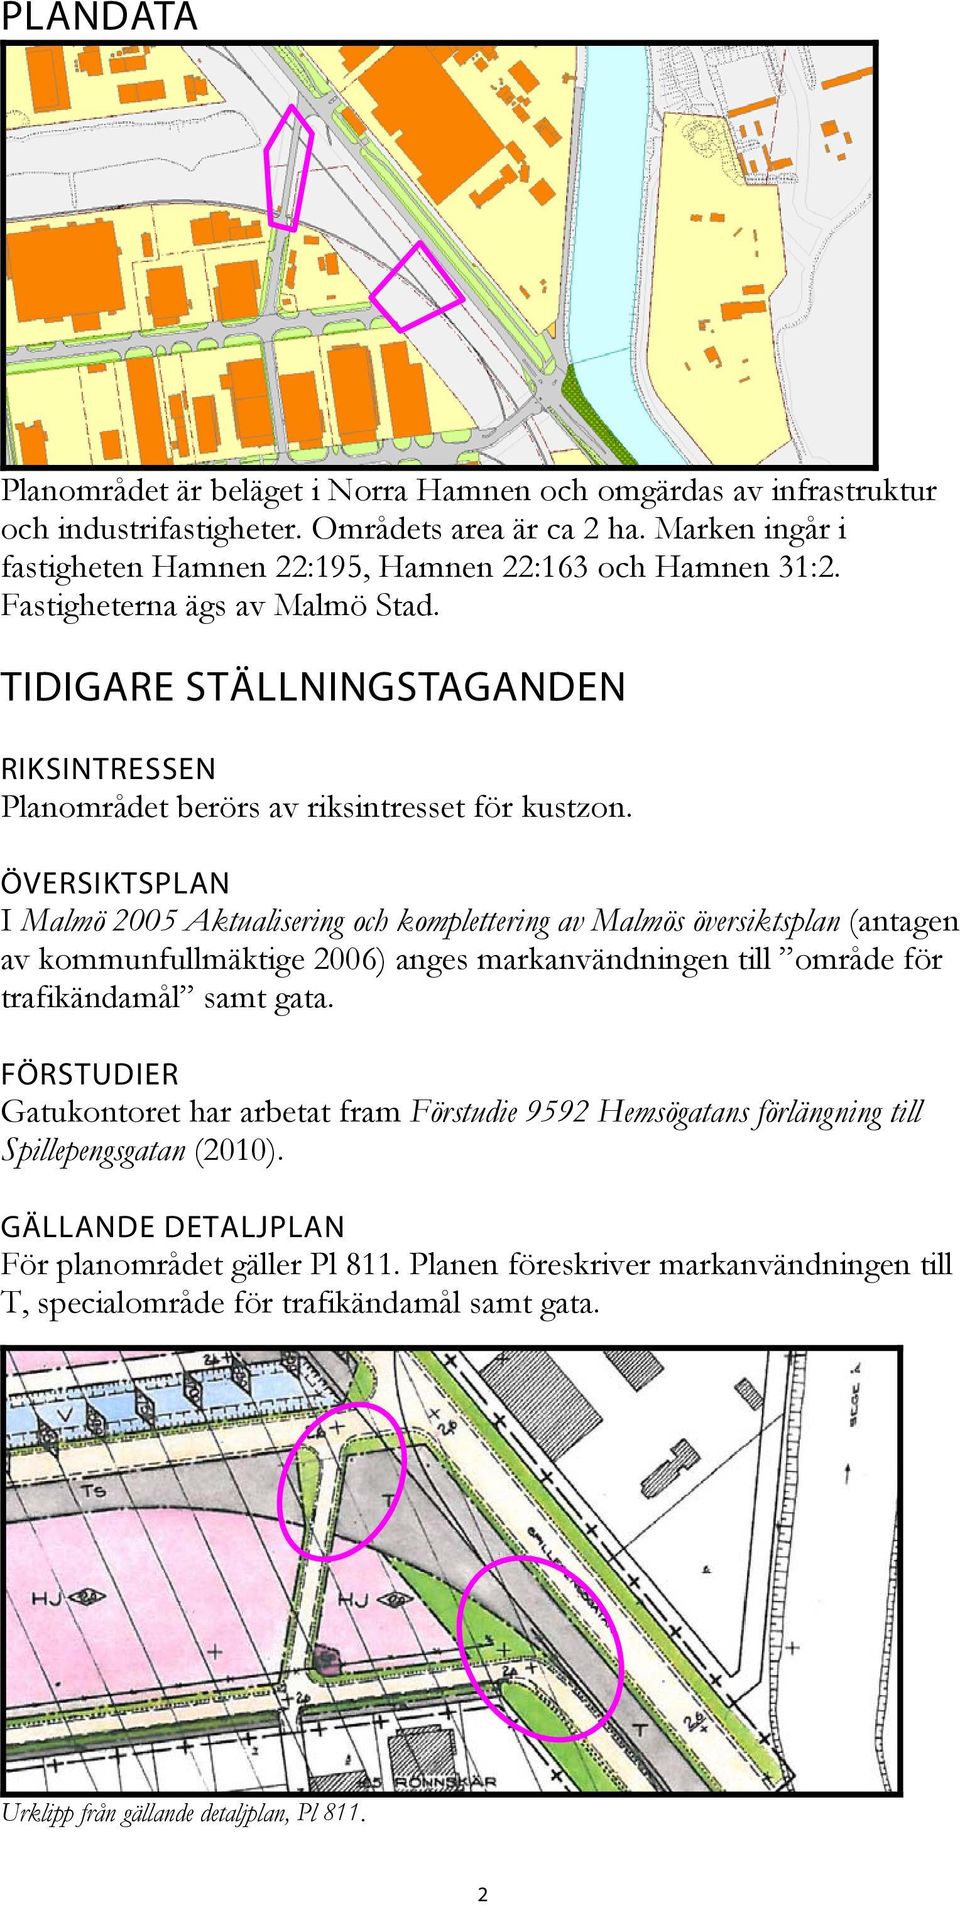 ÖVERSIKTSPLAN I Malmö 2005 Aktualisering och komplettering av Malmös översiktsplan (antagen av kommunfullmäktige 2006) anges markanvändningen till område för trafikändamål samt gata.